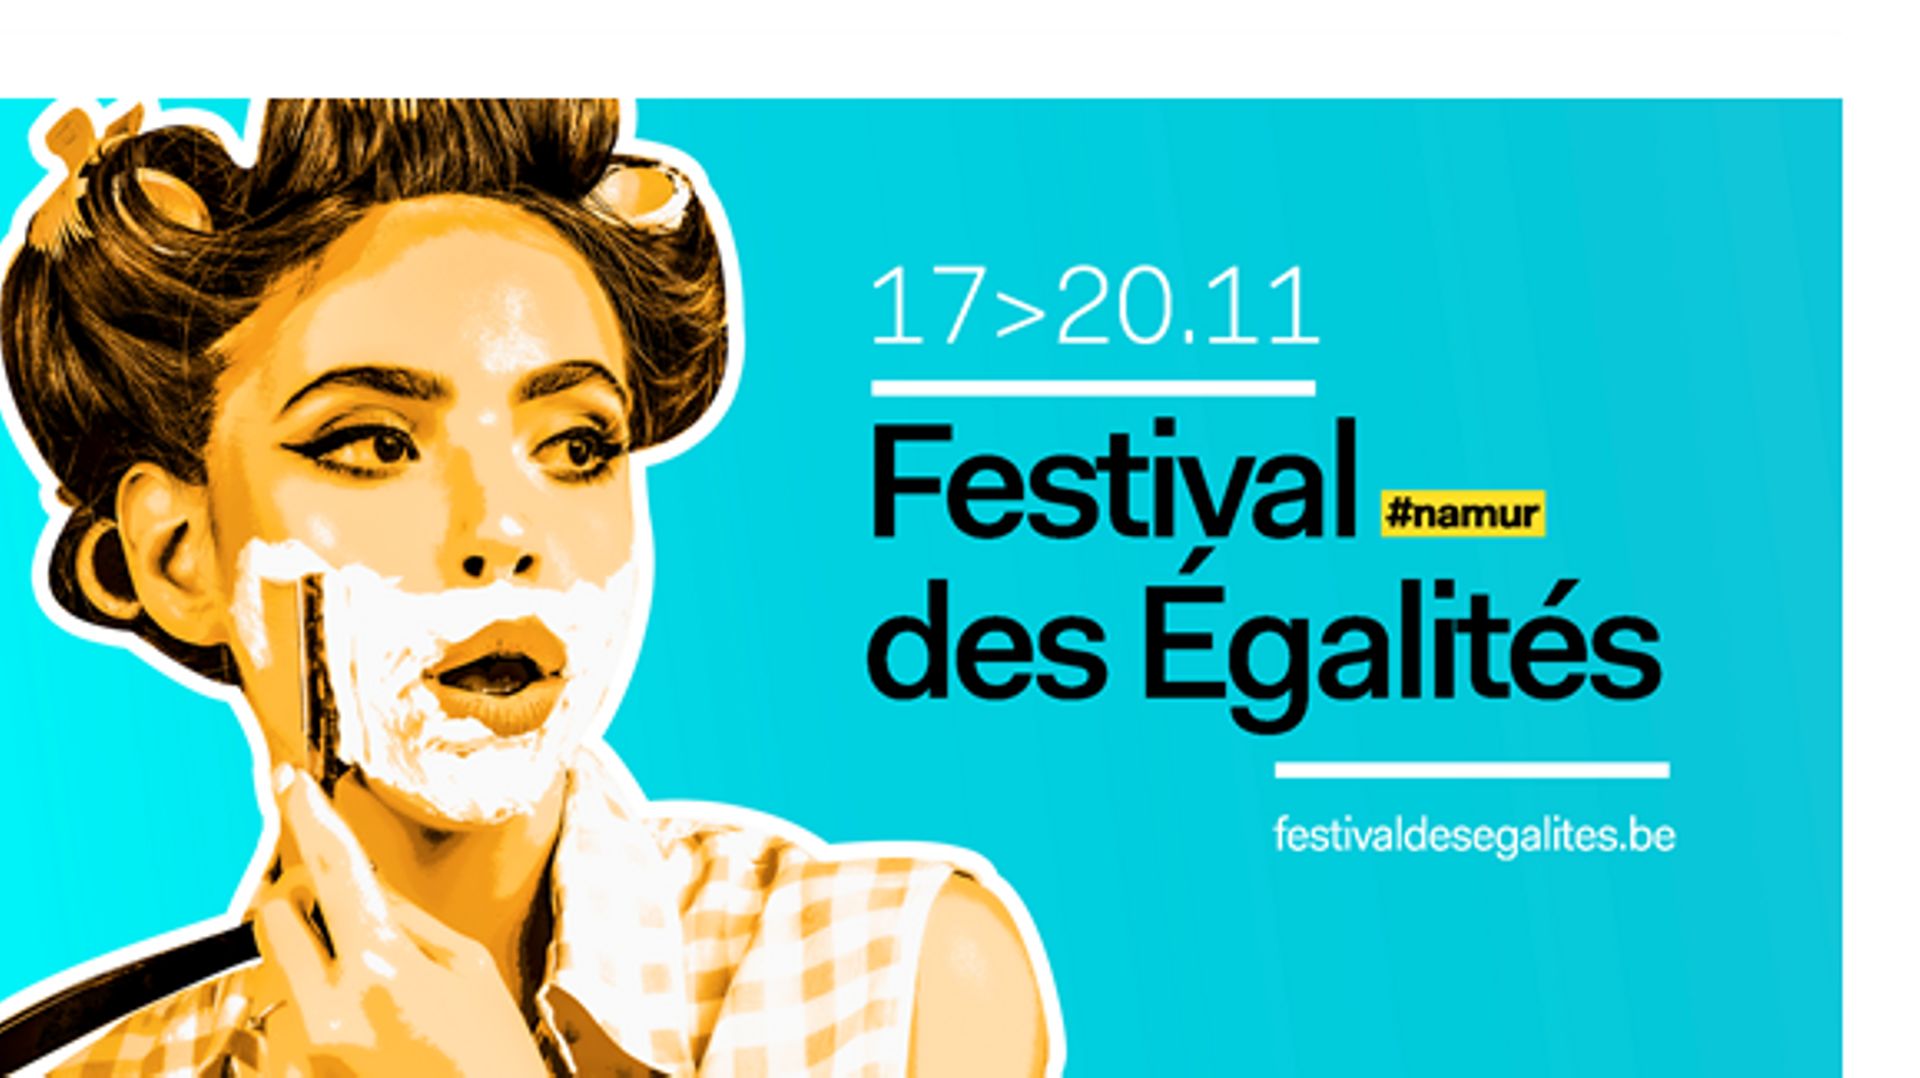 Le Festival des Egalités à Namur du 17 au 20 novembre